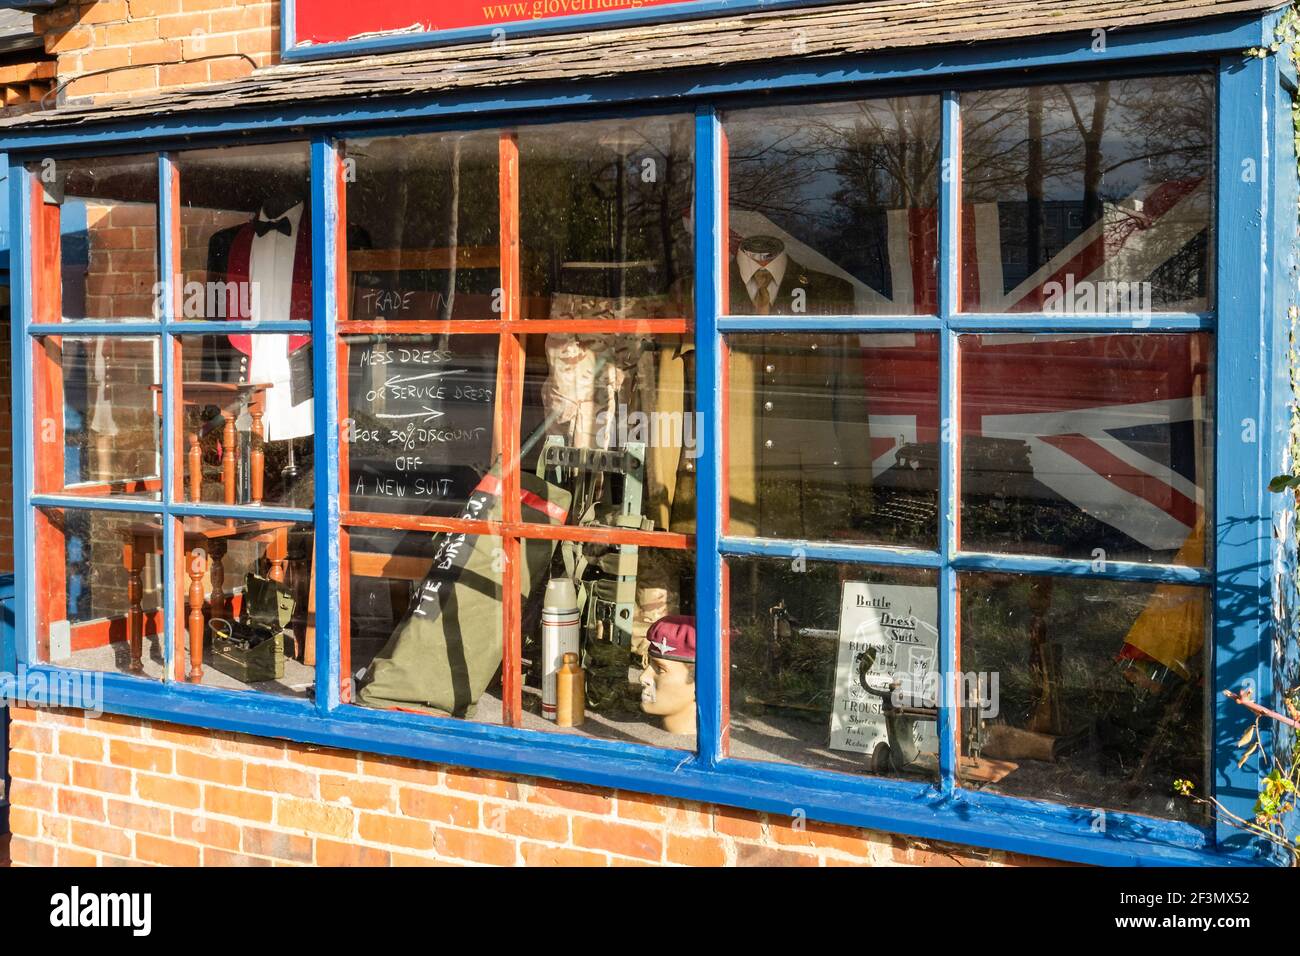 Glover & Riding, magasins militaires et civils de tailleurs à Aldershot, Hampshire, Angleterre, Royaume-Uni. Vitrine avec uniformes et tenues militaires. Banque D'Images